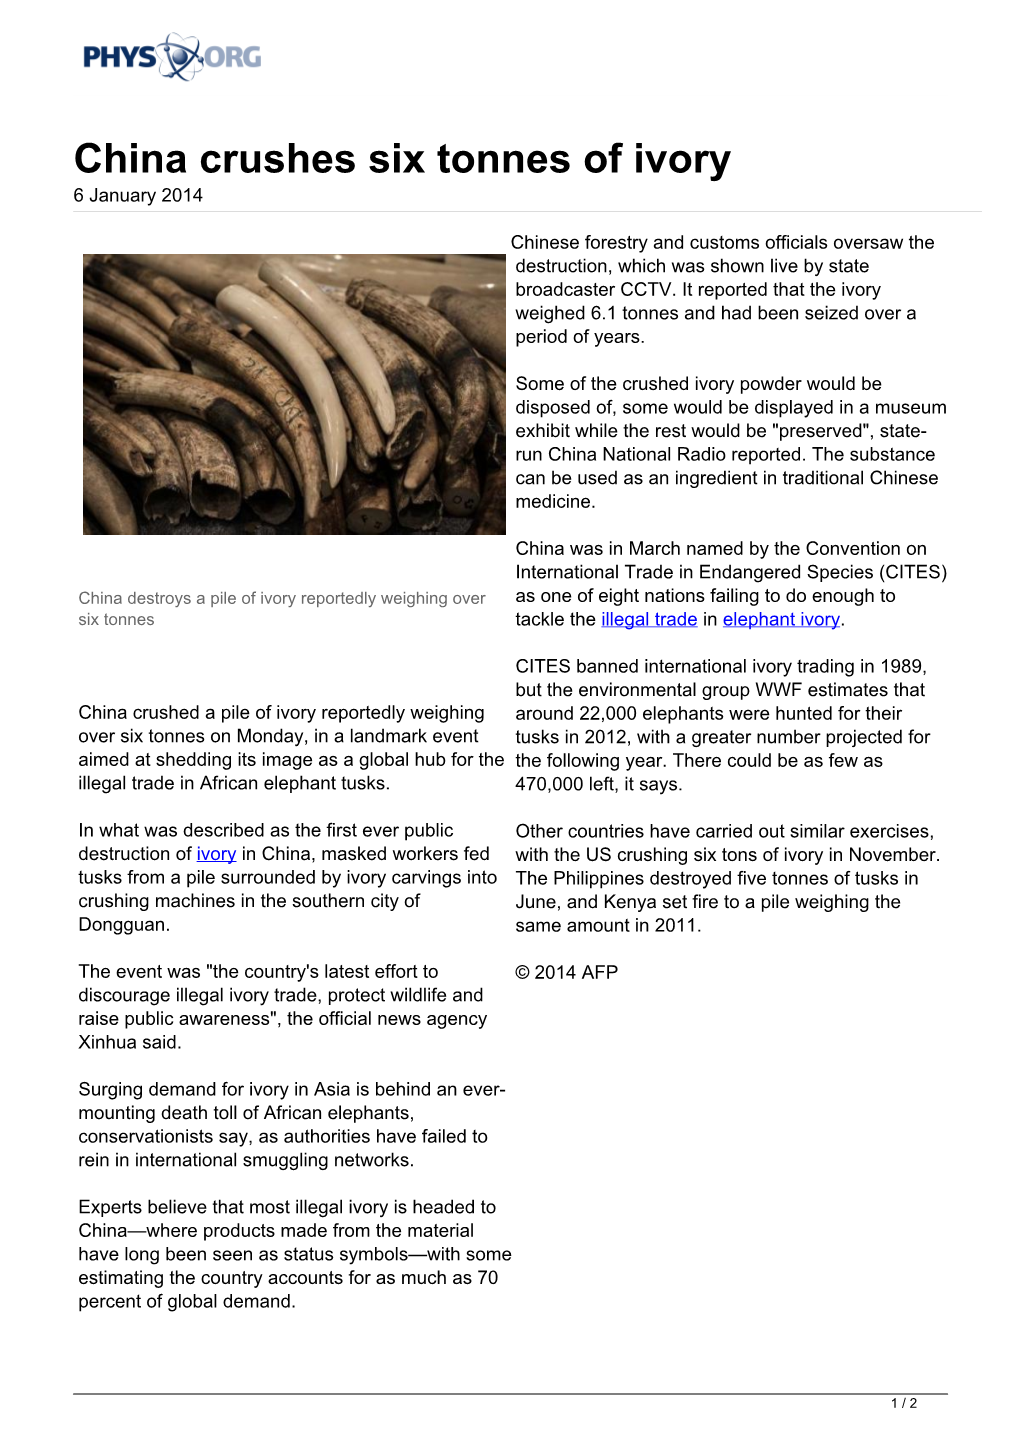 China Crushes Six Tonnes of Ivory 6 January 2014